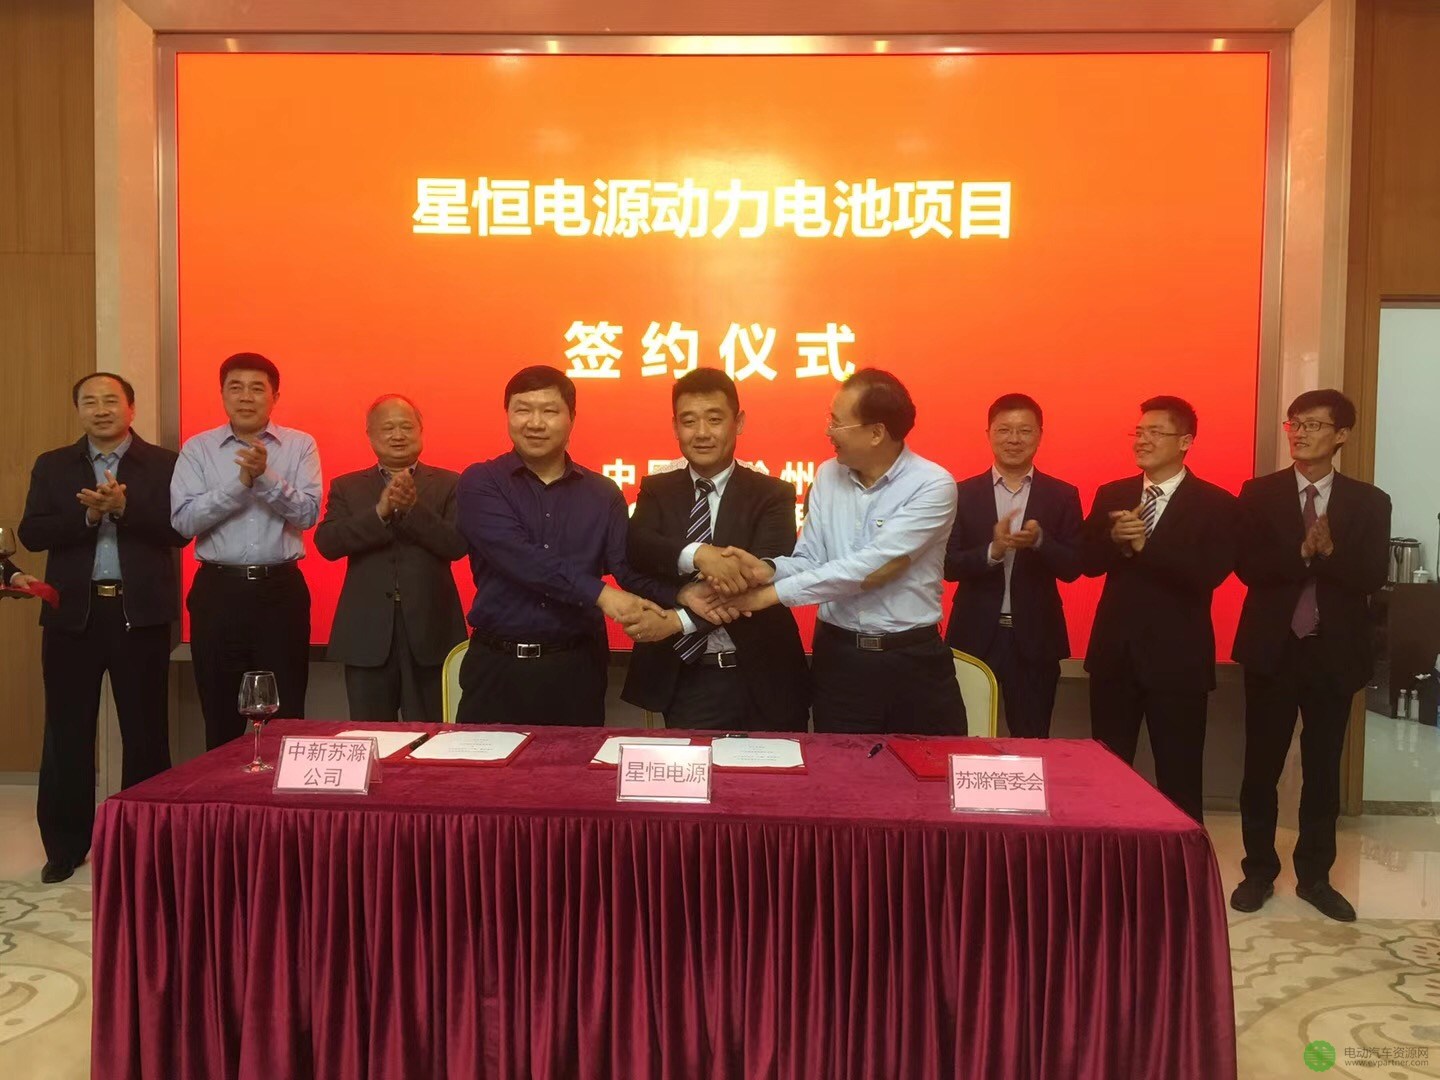 星恒电源100亿元投建25GWh滁州生产基地 全面发力动力锂电池市场    